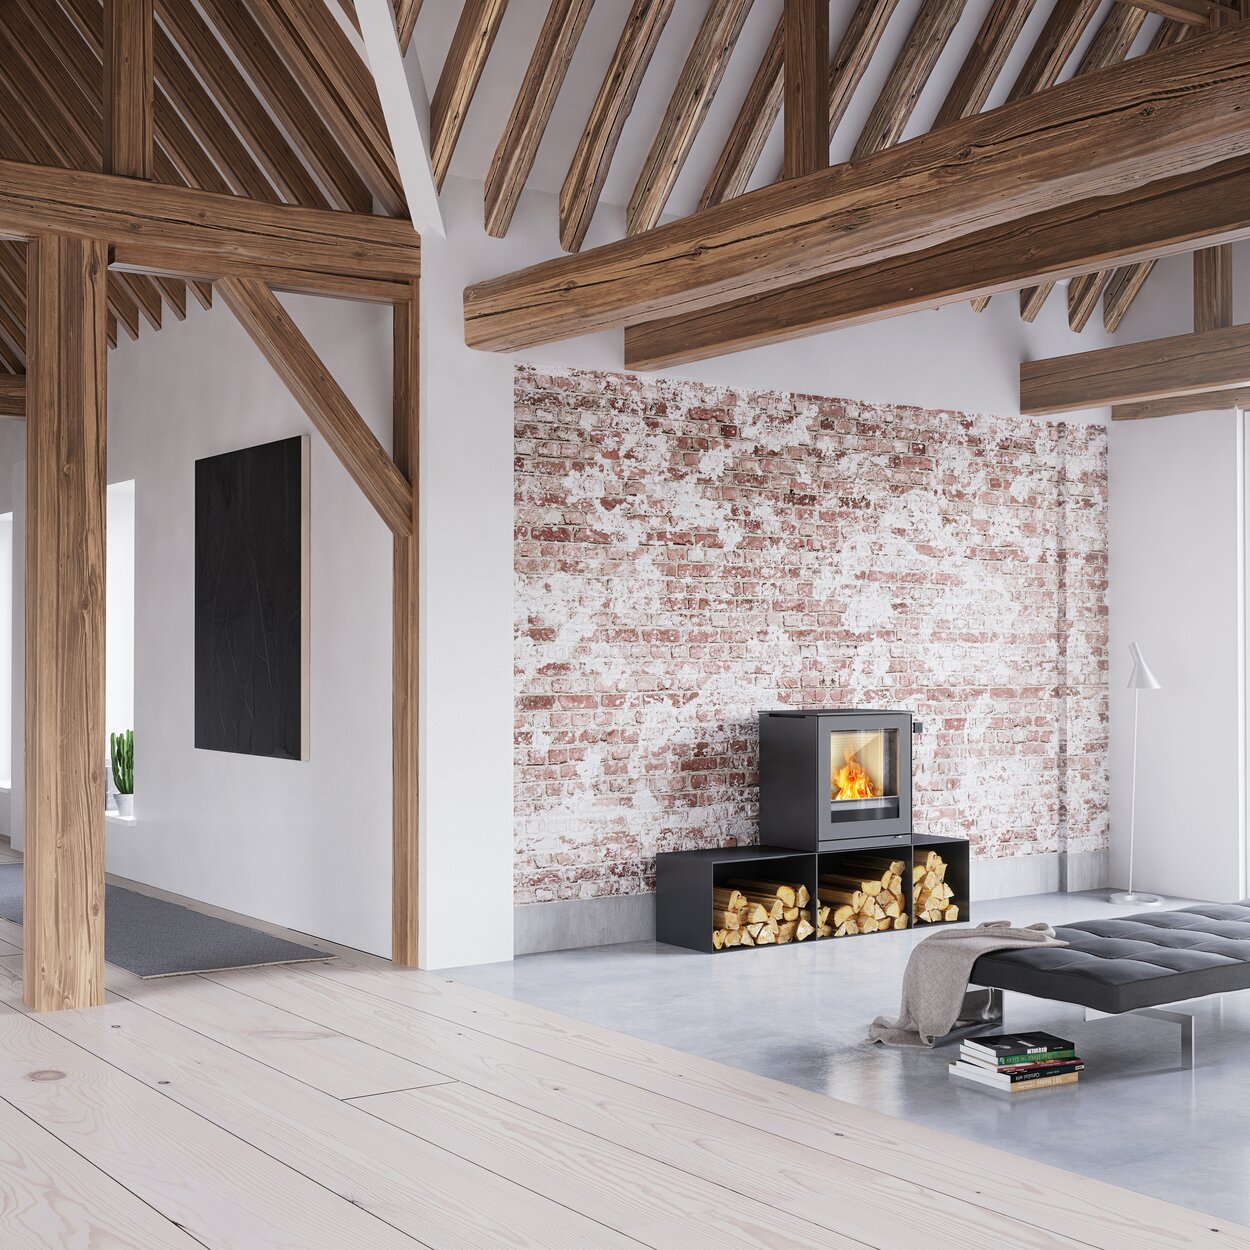 Holz-Kaminofen Q-TEE 2 in Schwarz mit Seitenbänken in einem minimalistisch eingerichteten, rustikalen Haus 